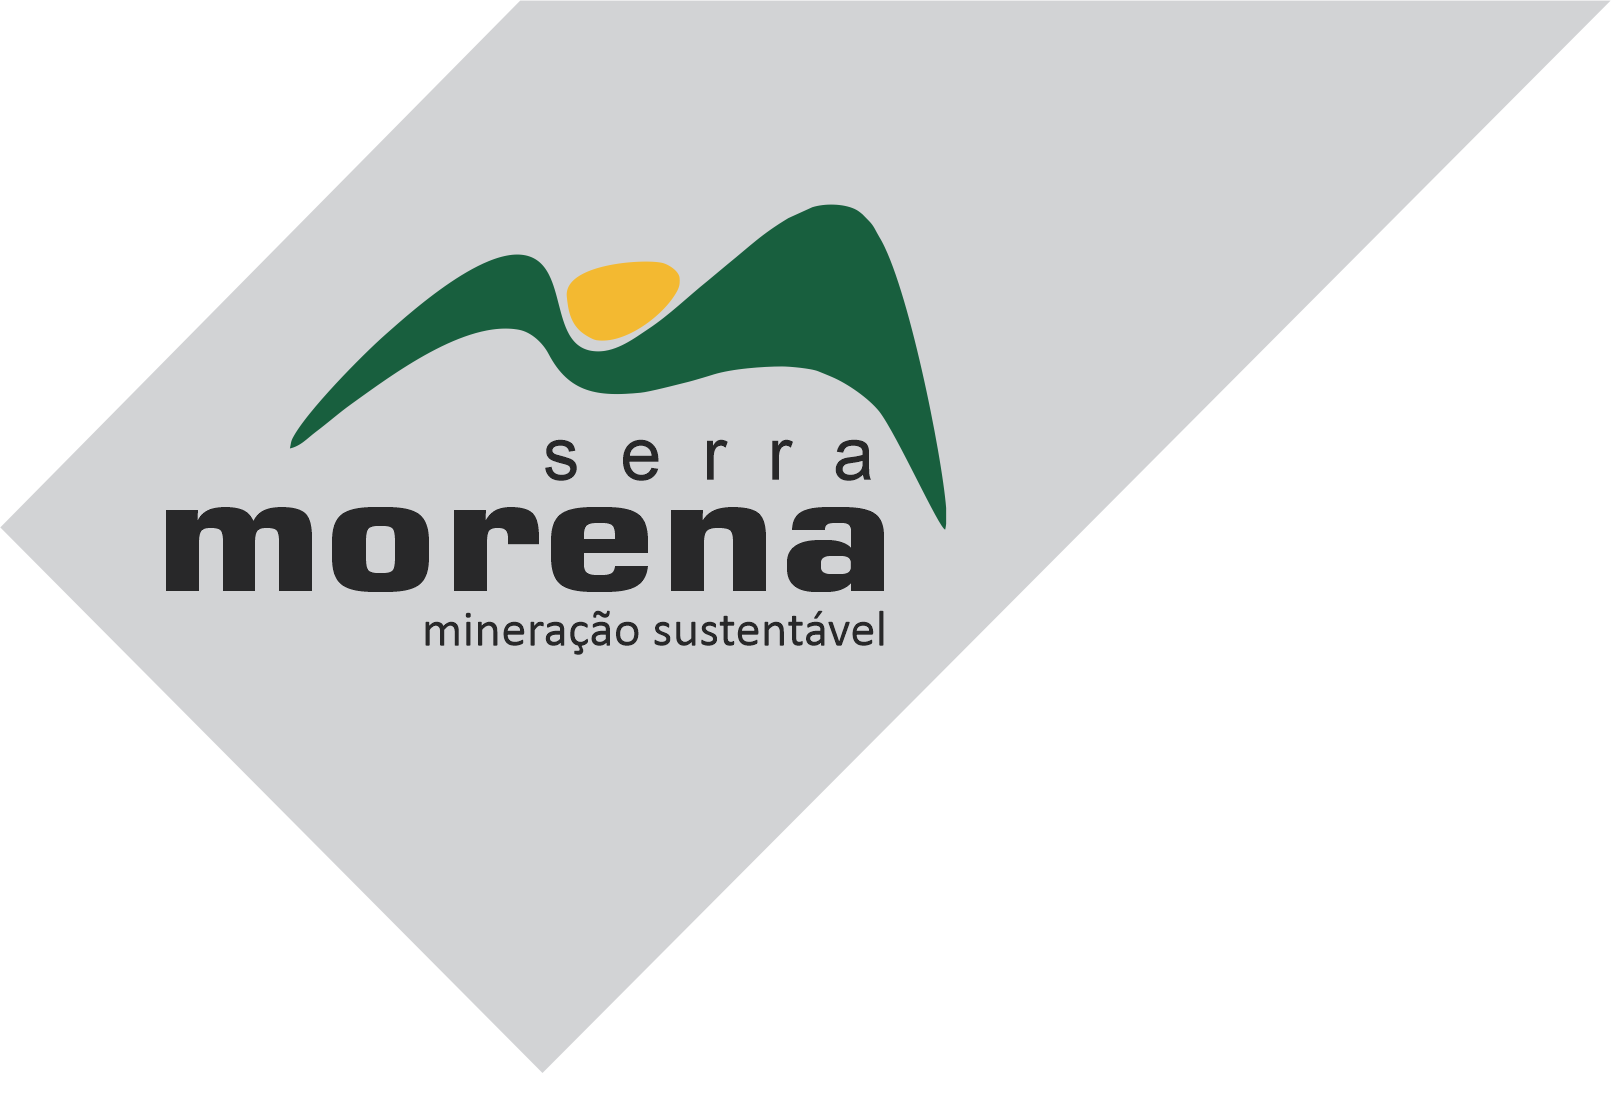 Serra Morena